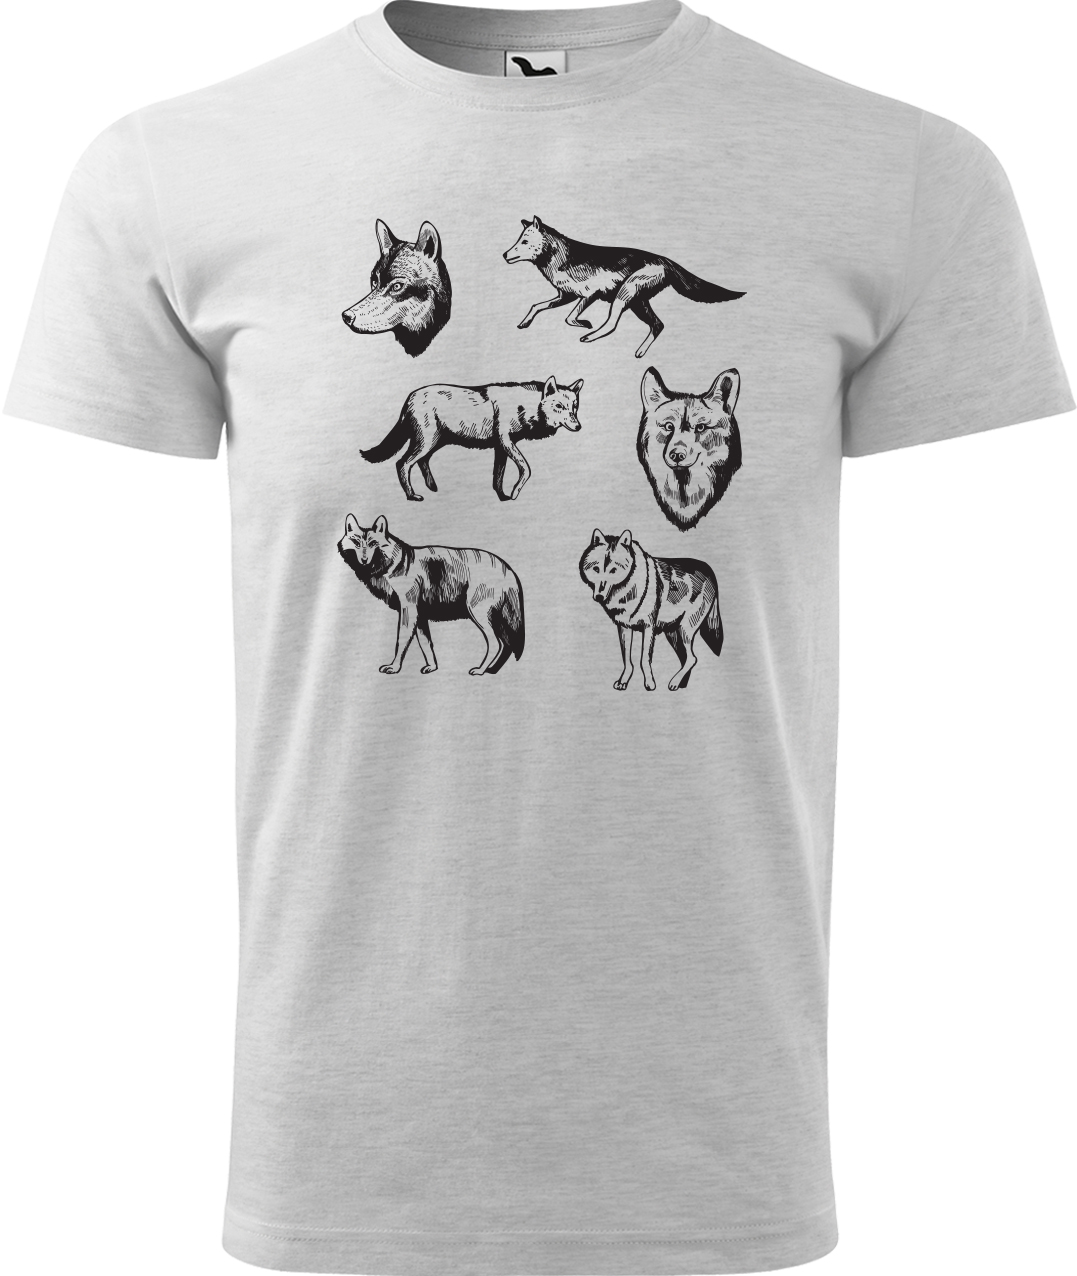 Pánské tričko s vlkem - Vlci Velikost: S, Barva: Světle šedý melír (03), Střih: pánský